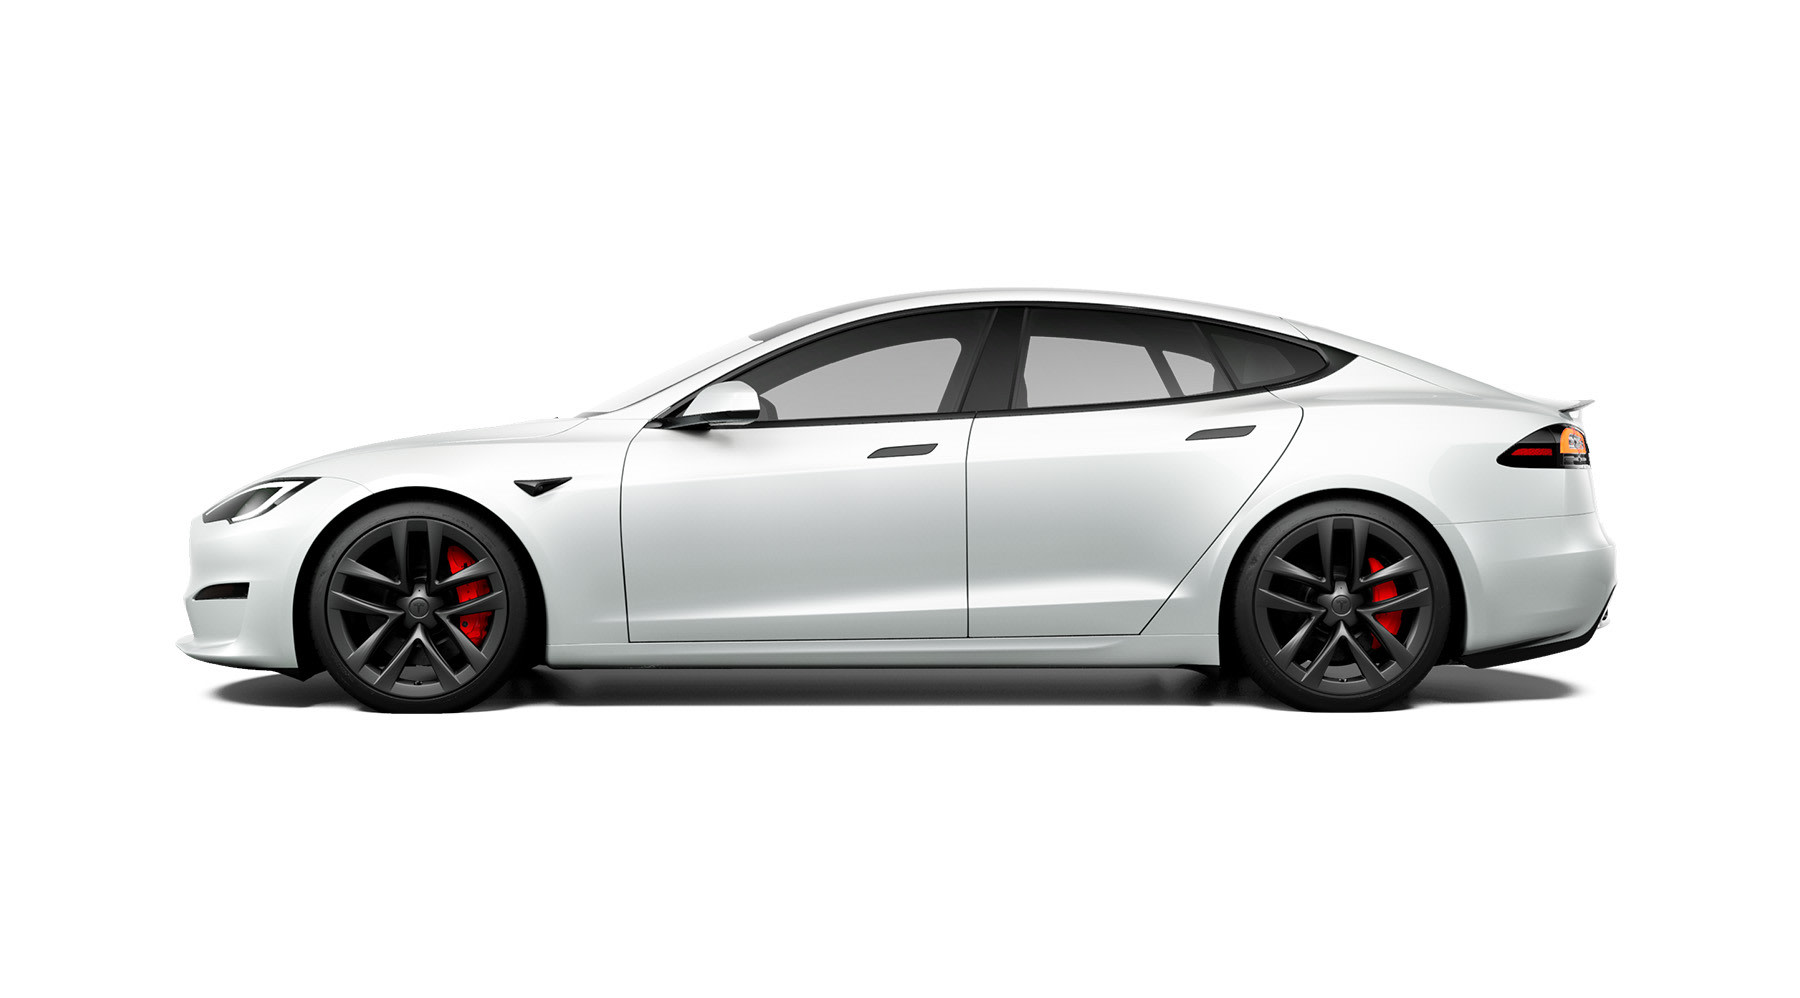 منظر جانبي لسيارة Model S باللون الأبيض اللؤلؤي